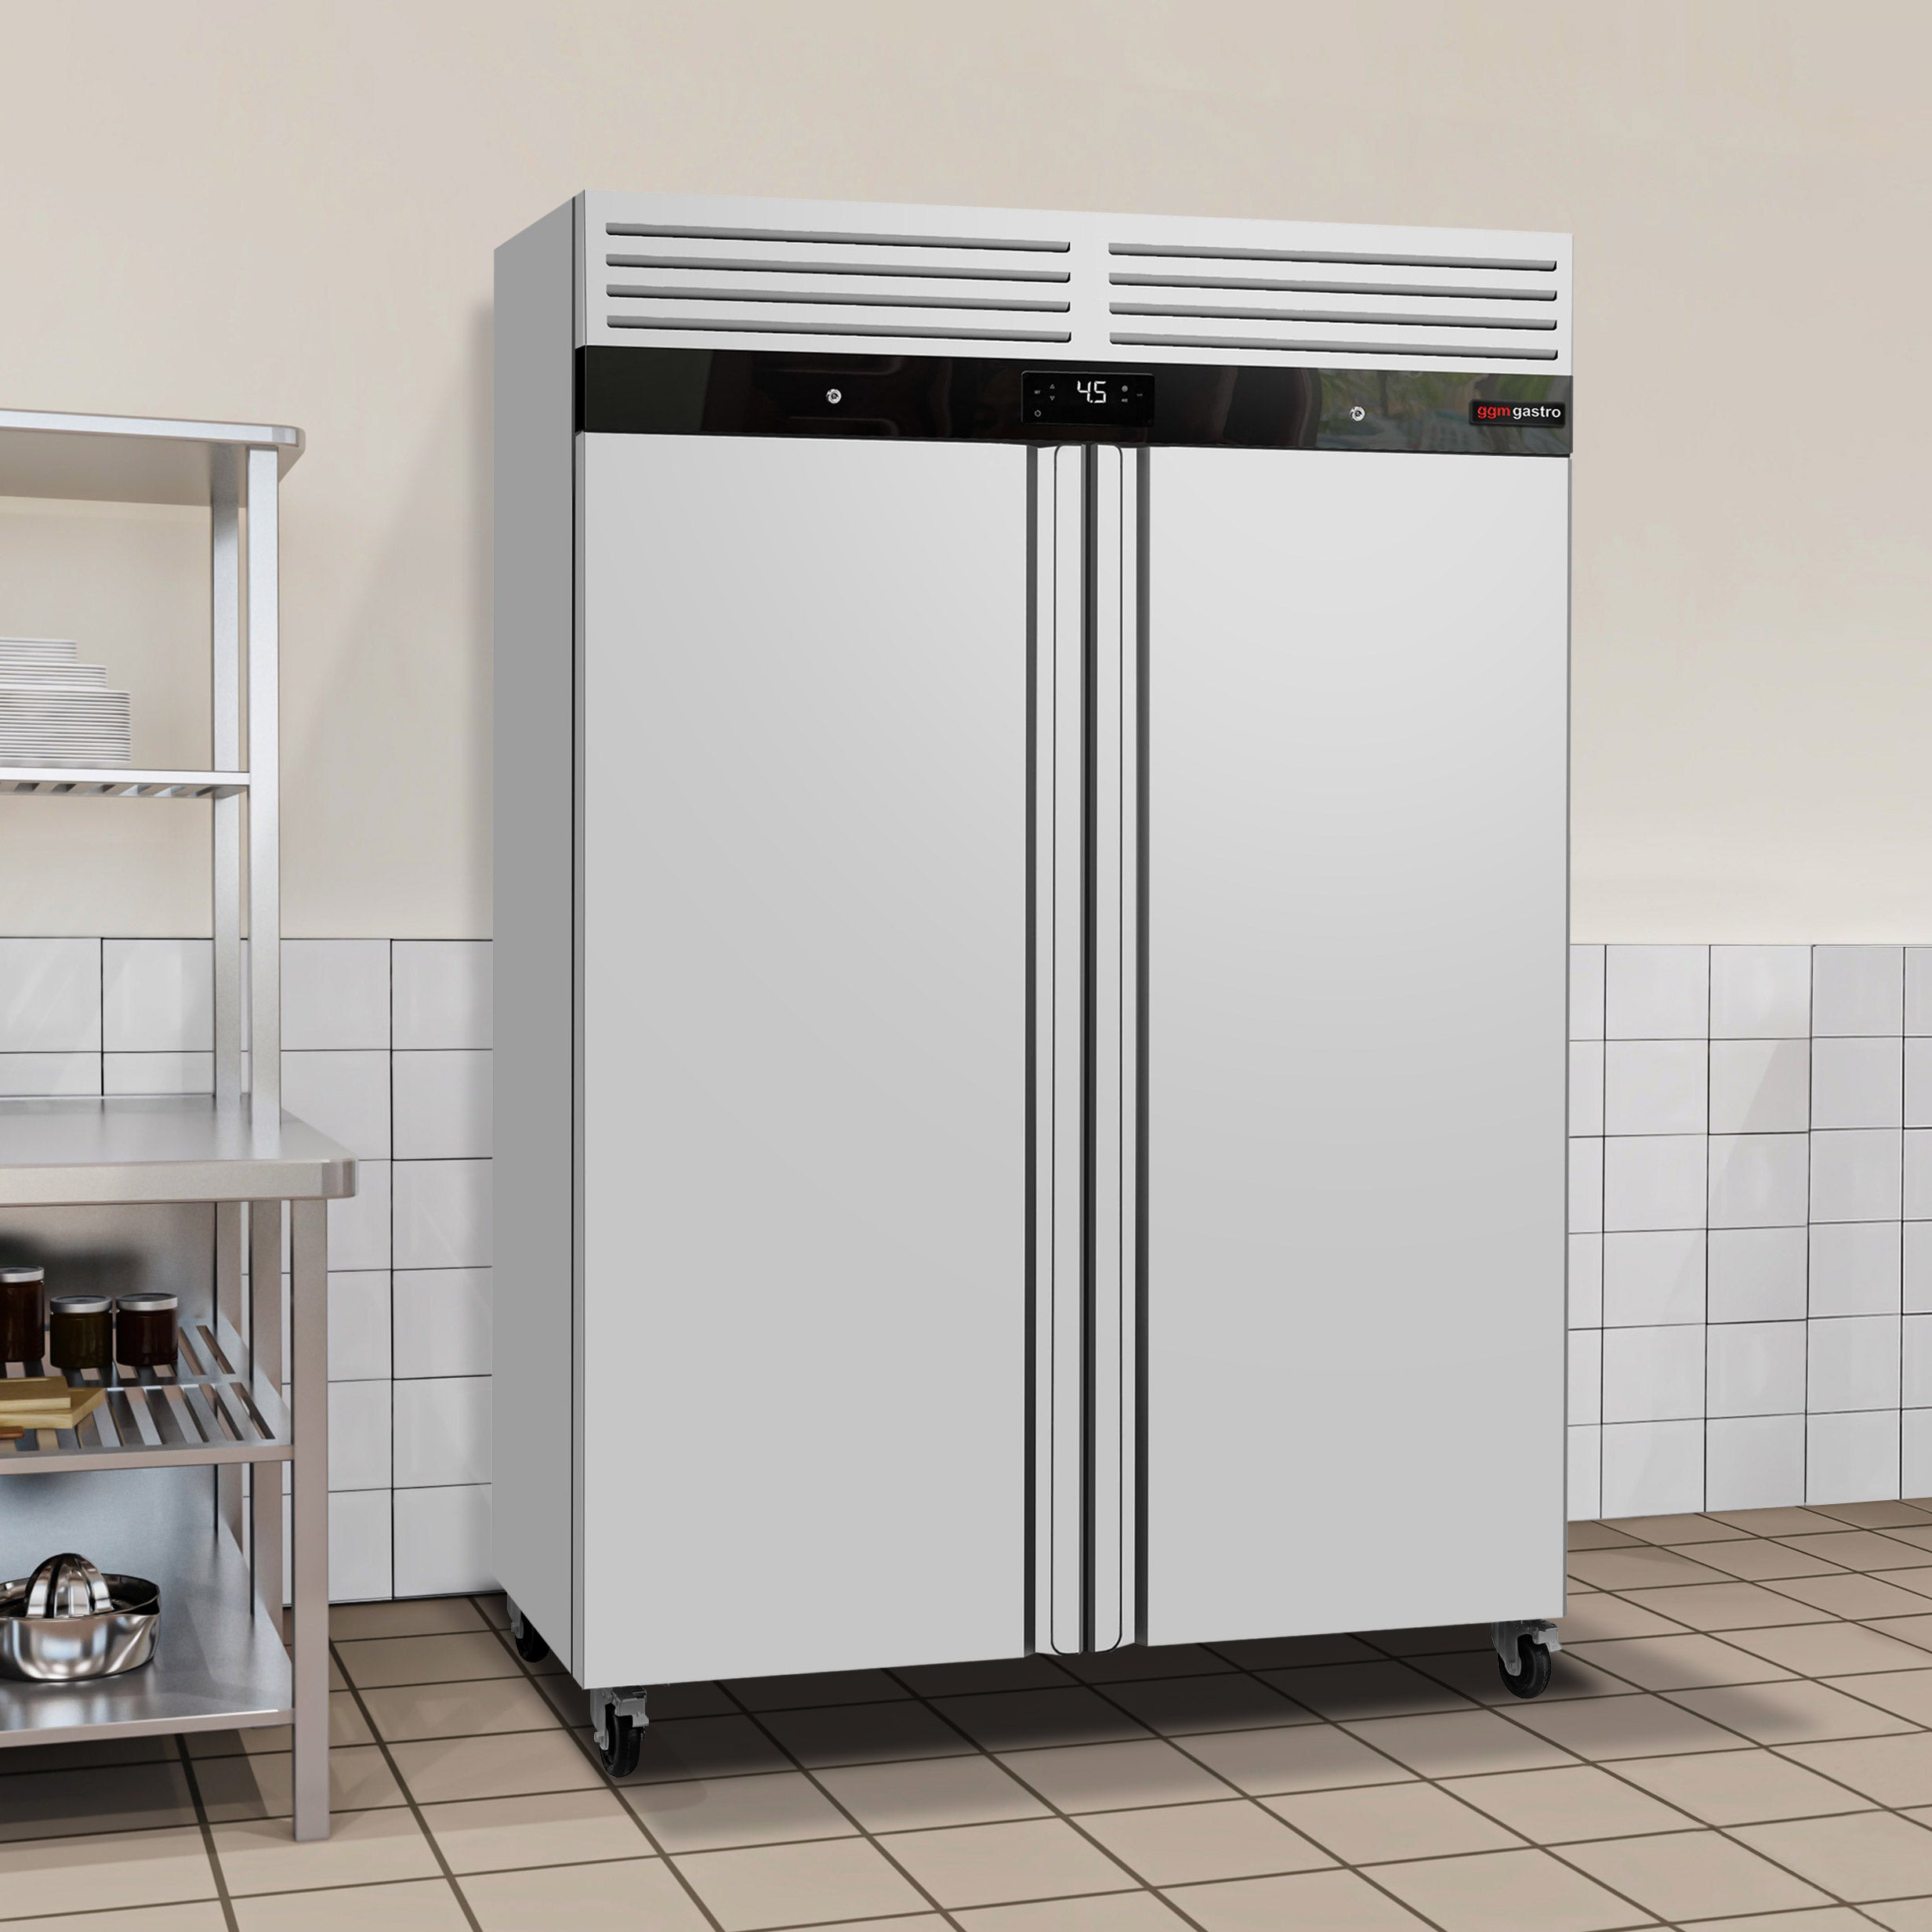 Хладилник ECO - GN 2/1 - 1340 литра - 2 врати